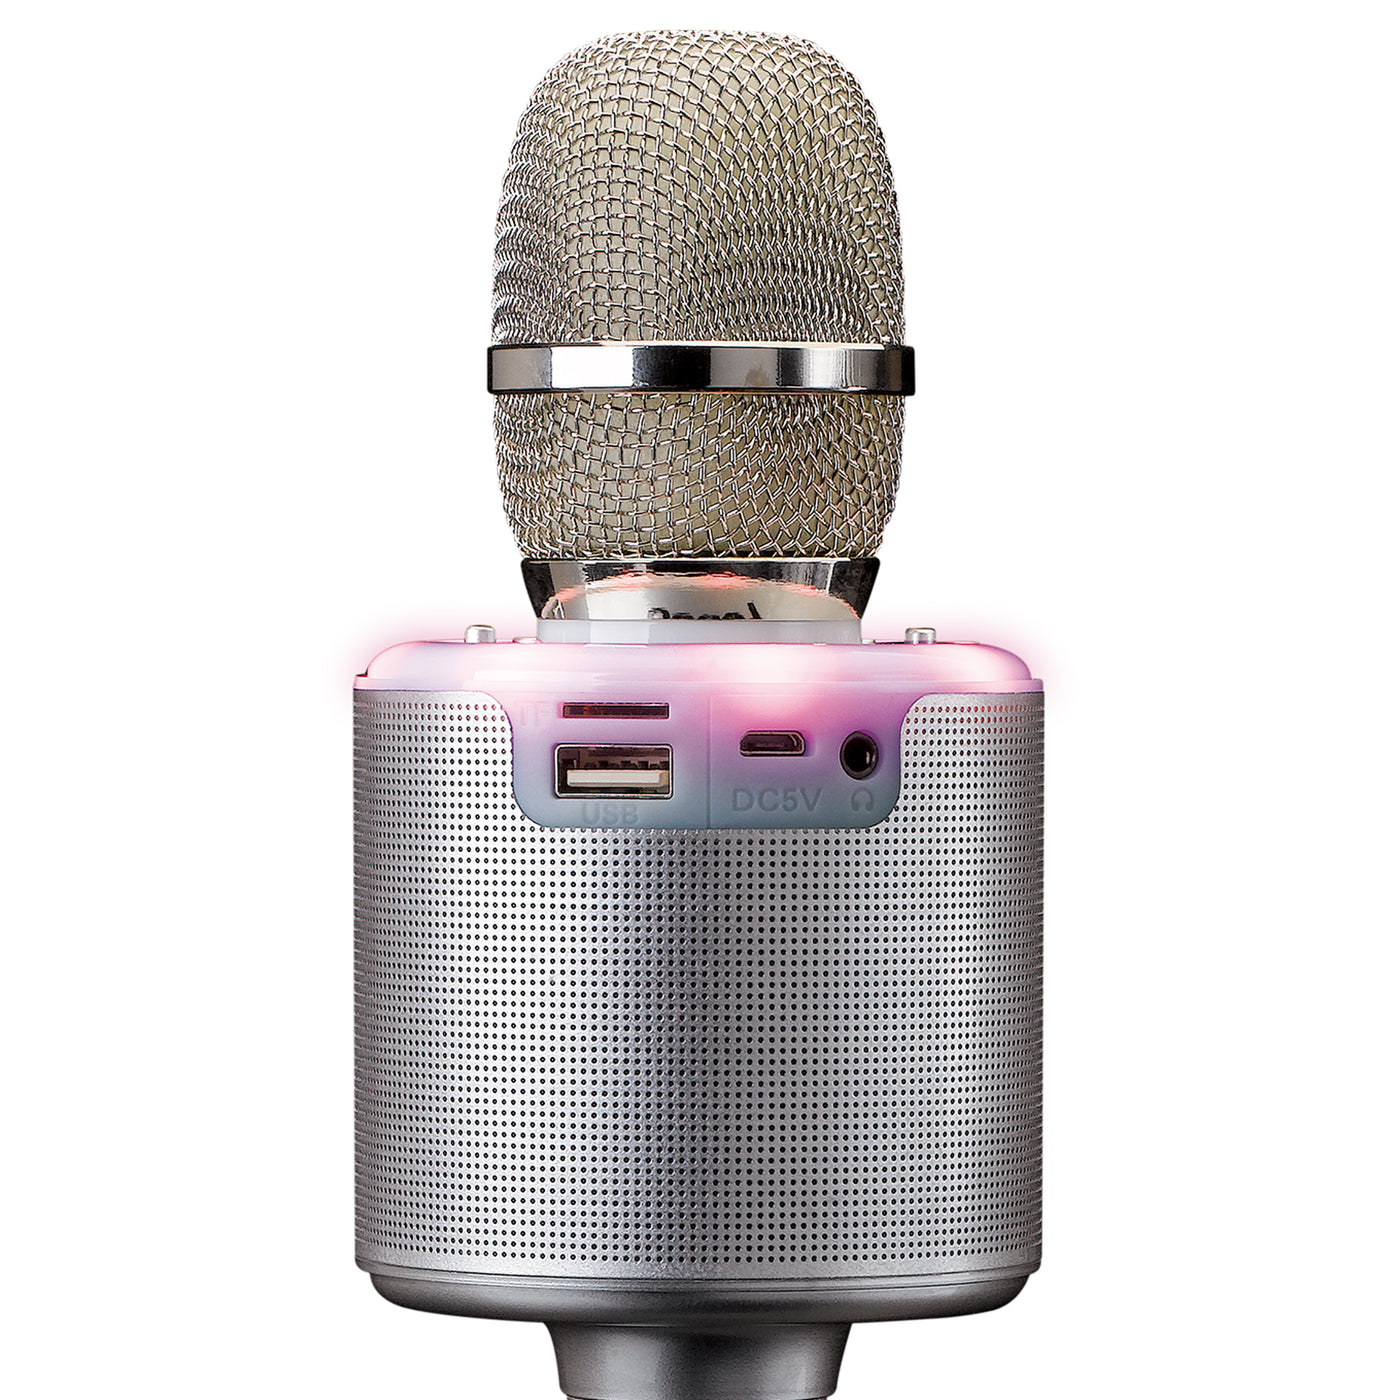 LENCO BMC-085SI - Mikrofon do karaoke z Bluetooth®, głośnikiem i oświetleniem - srebrny